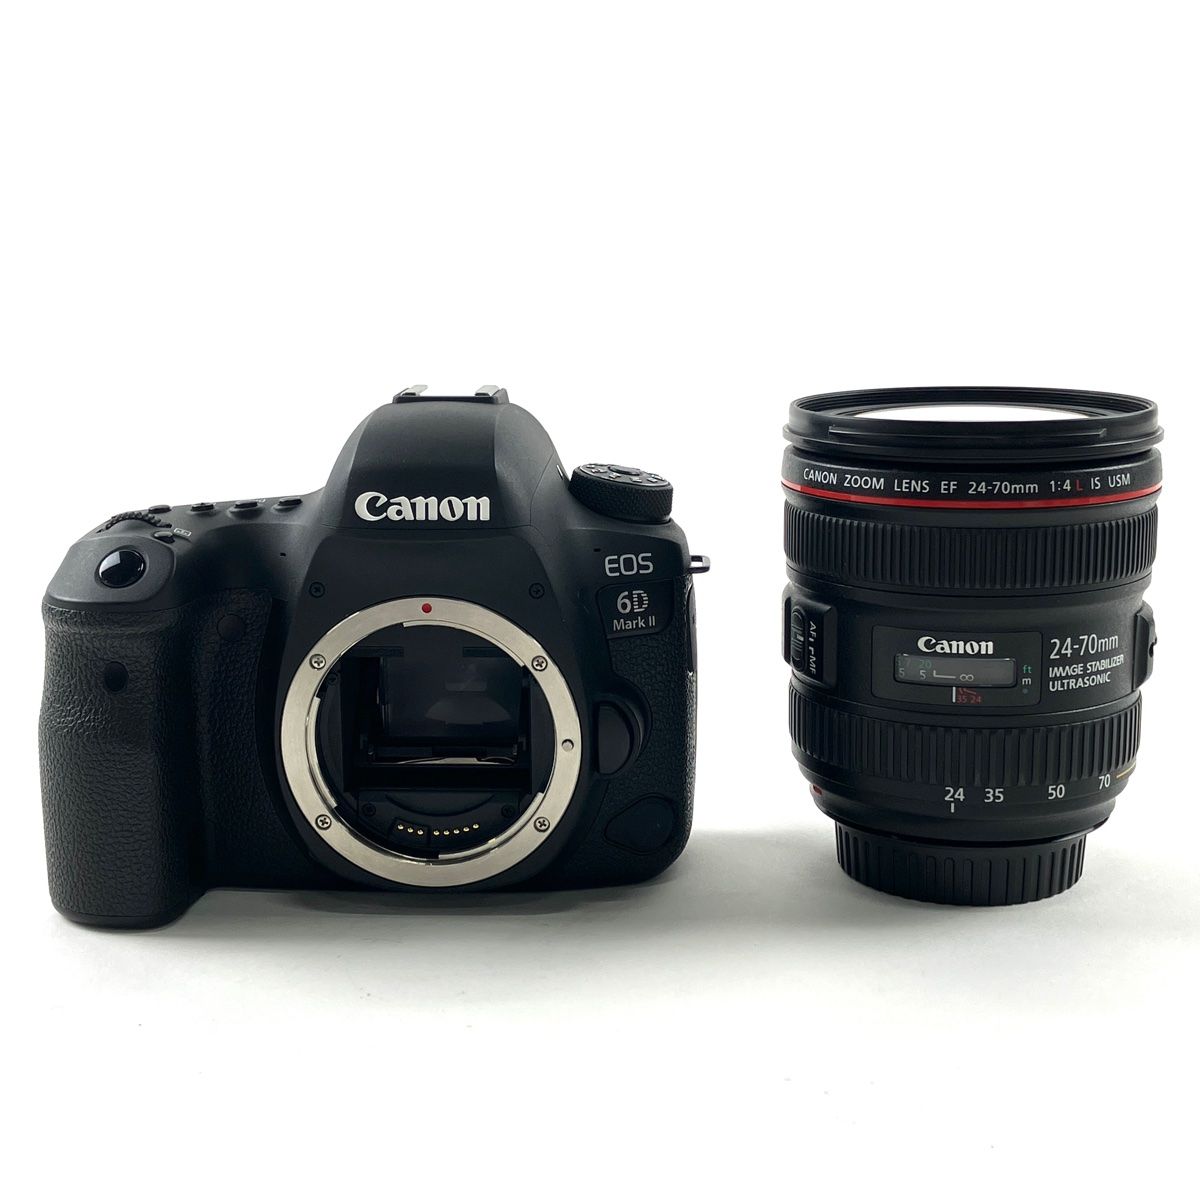 キヤノン Canon EOS 6D Mark II + EF 24-70mm F4L IS USM デジタル ...